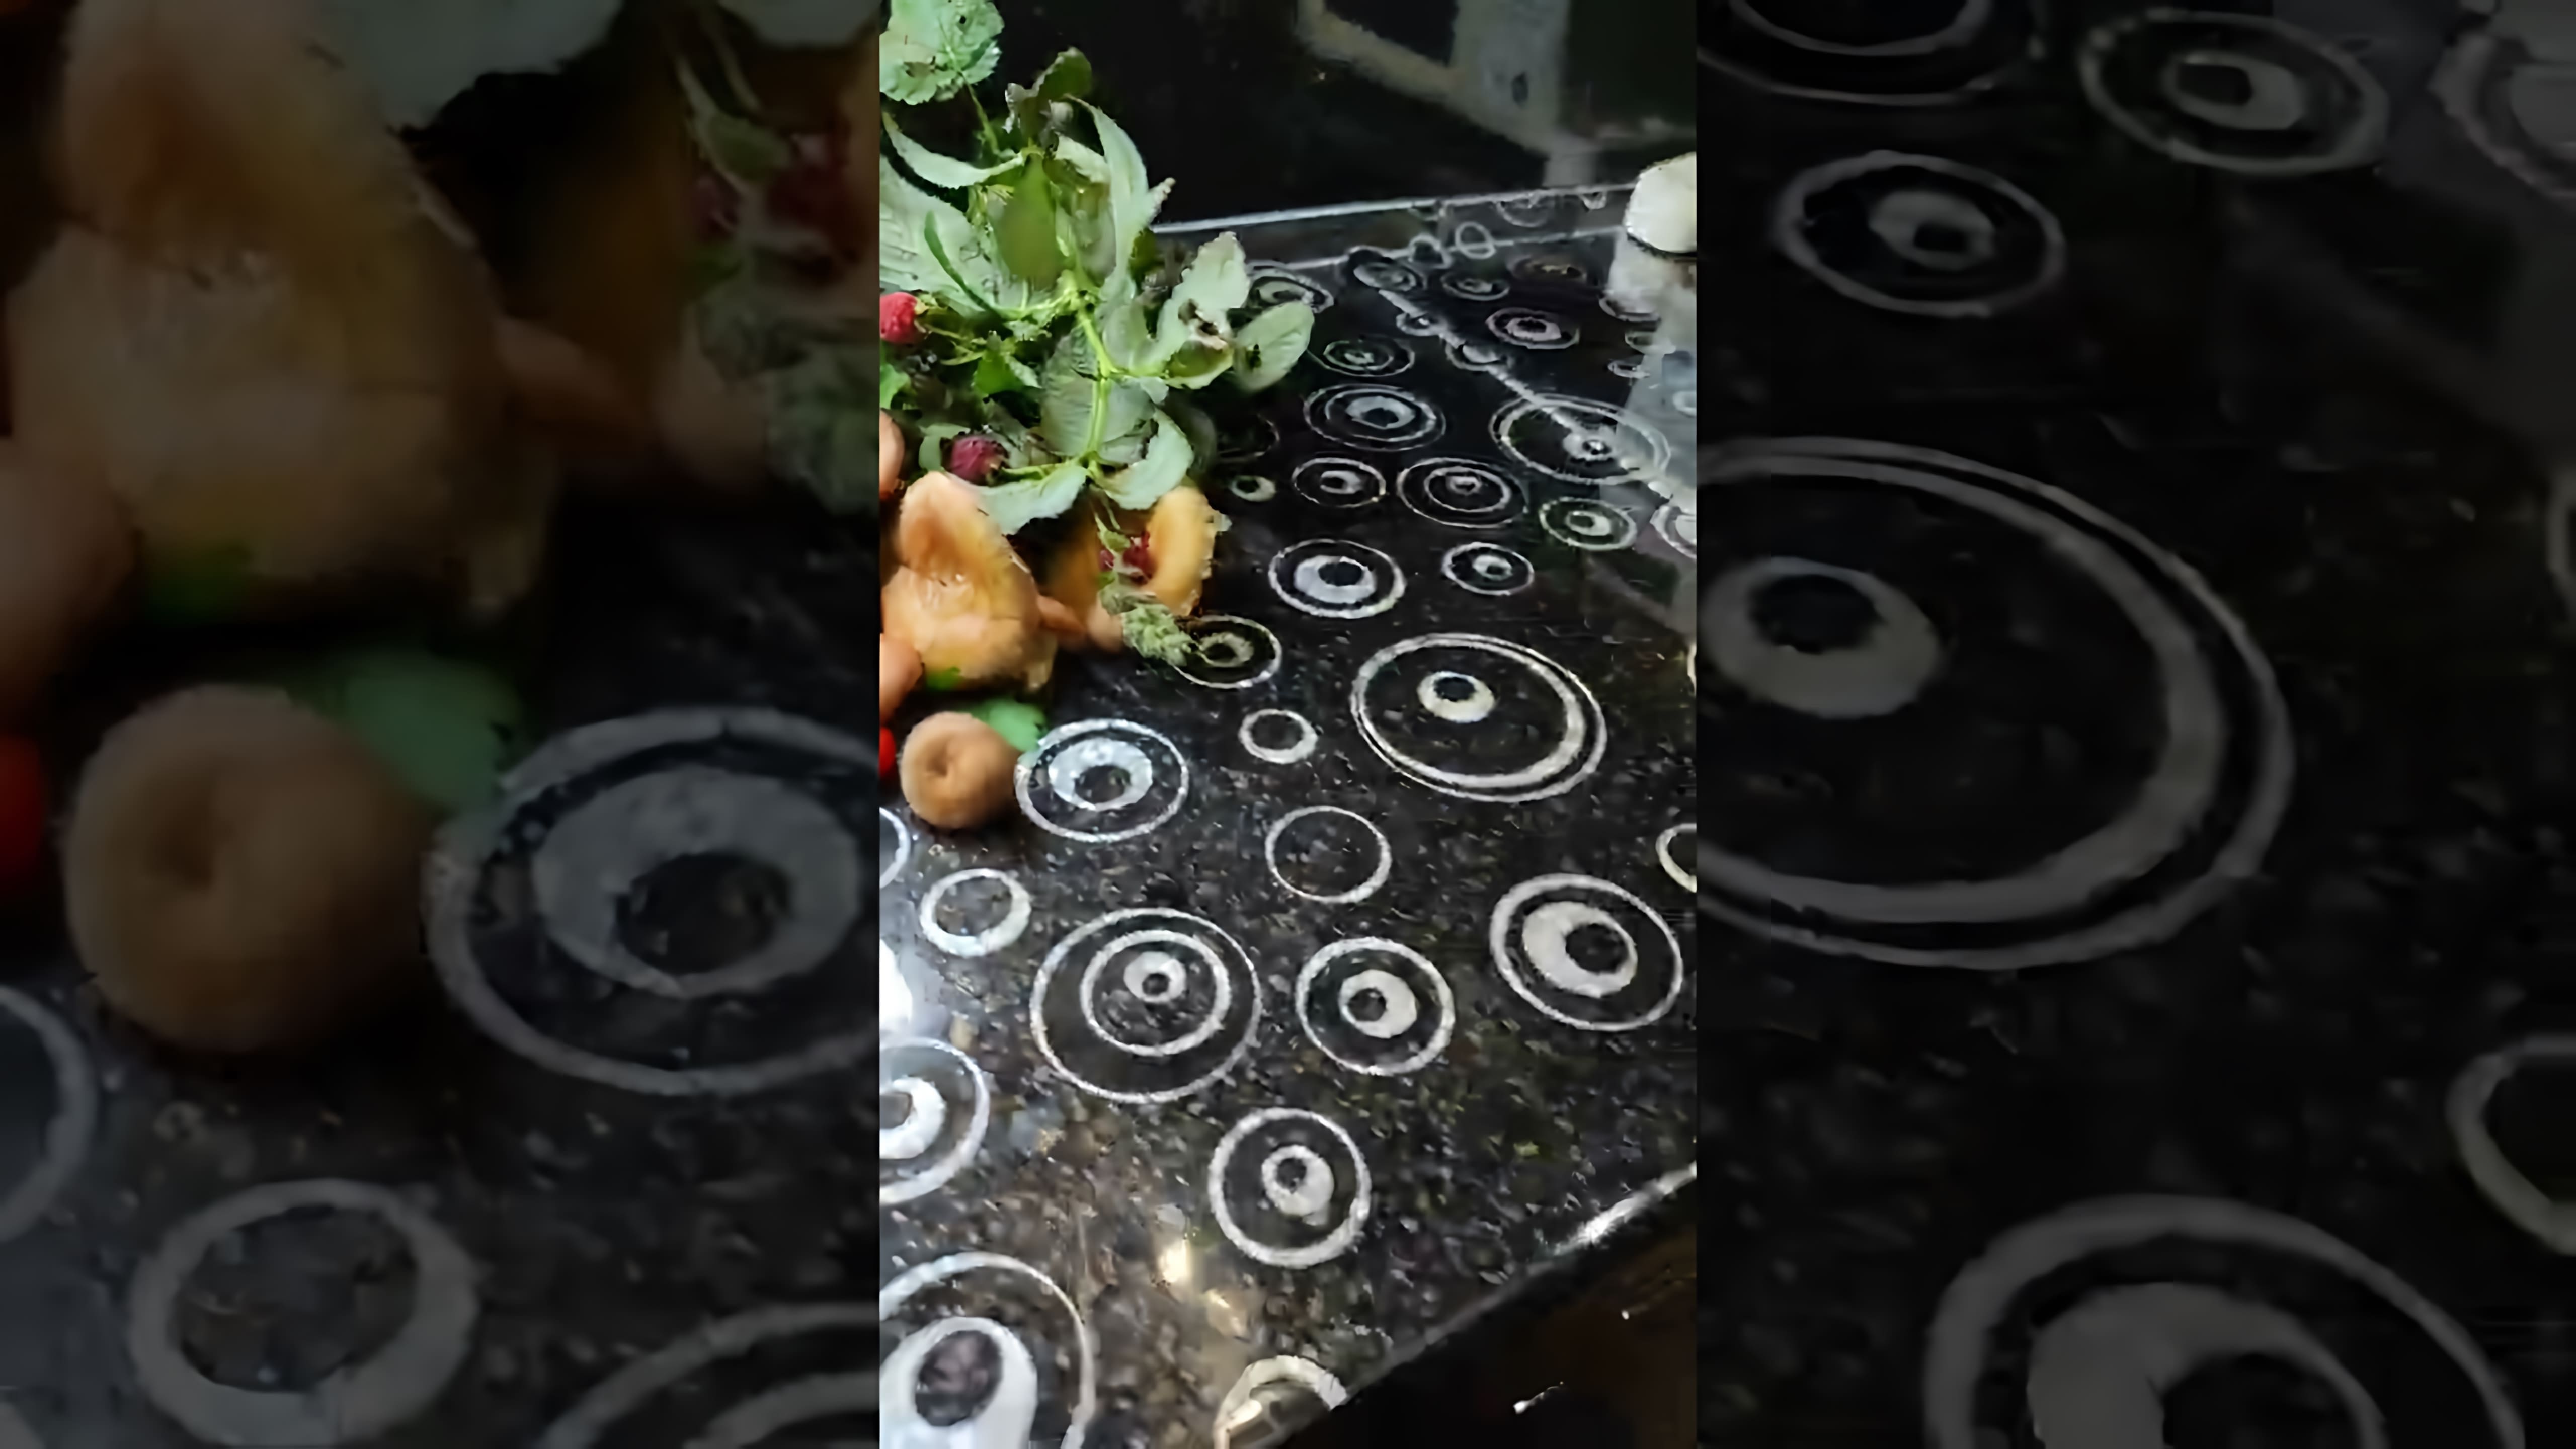 В этом видео демонстрируется процесс засолки грибов волнушек